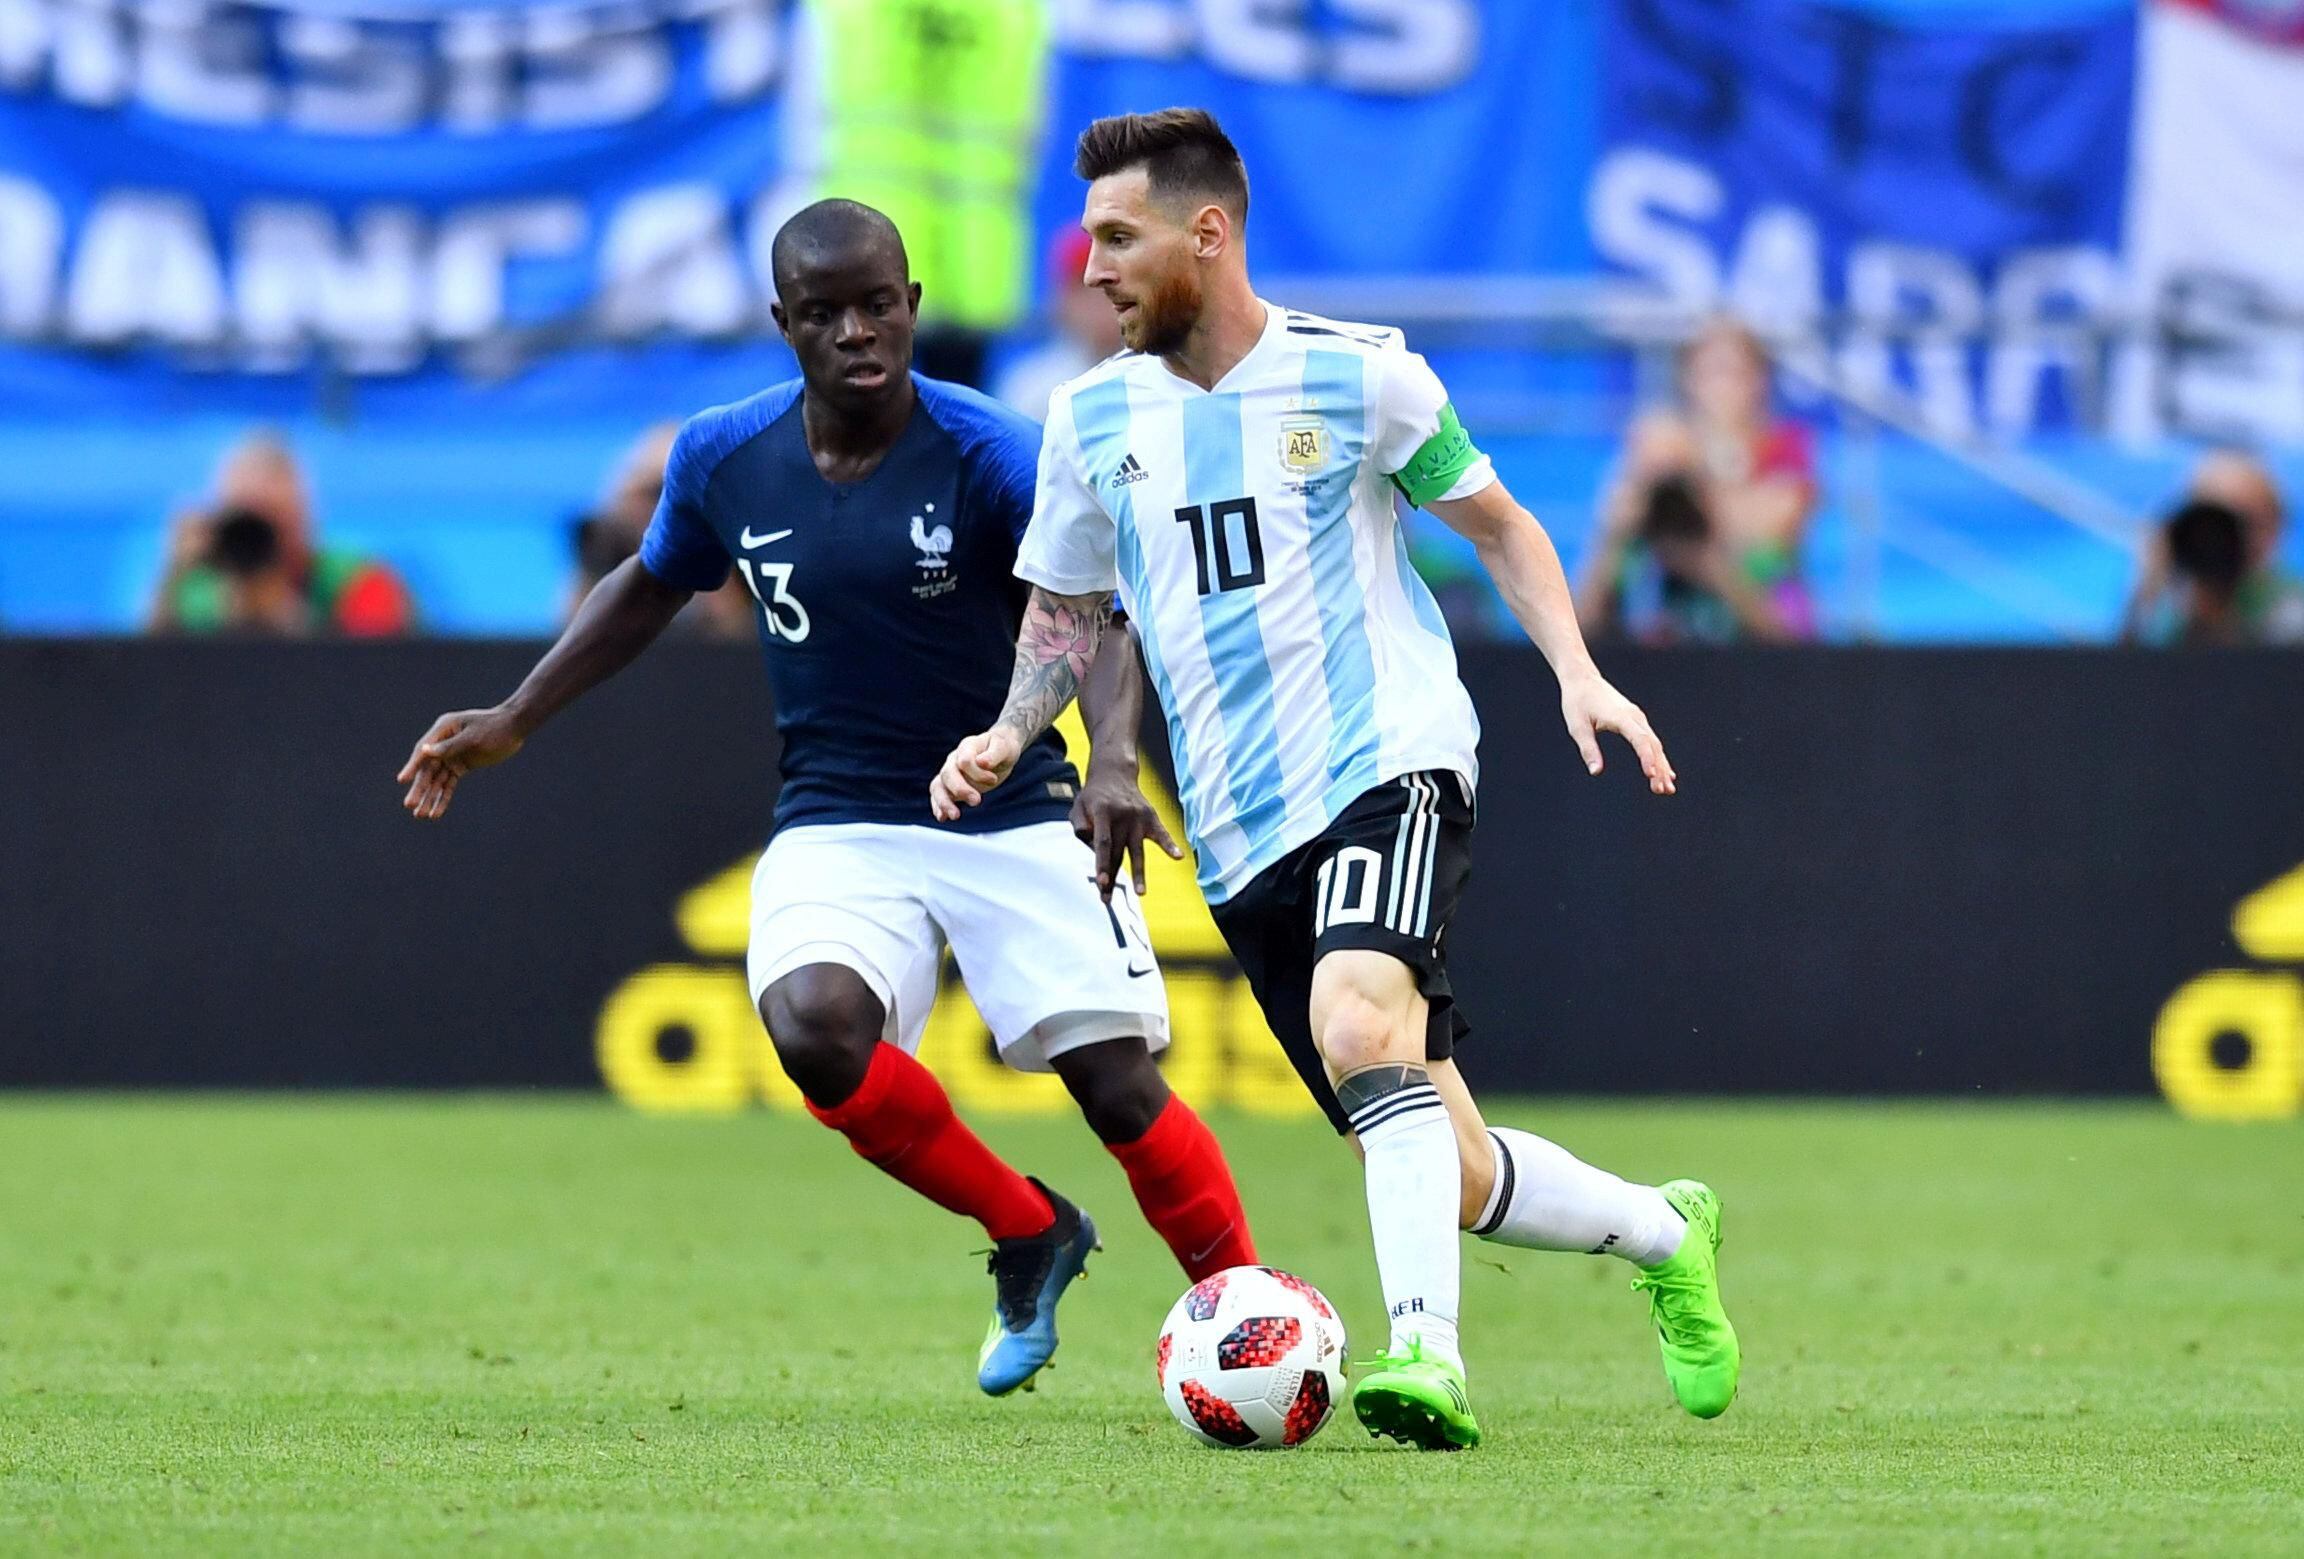 Argentina x França: Todos os duelos em Copas do Mundo - Imortais